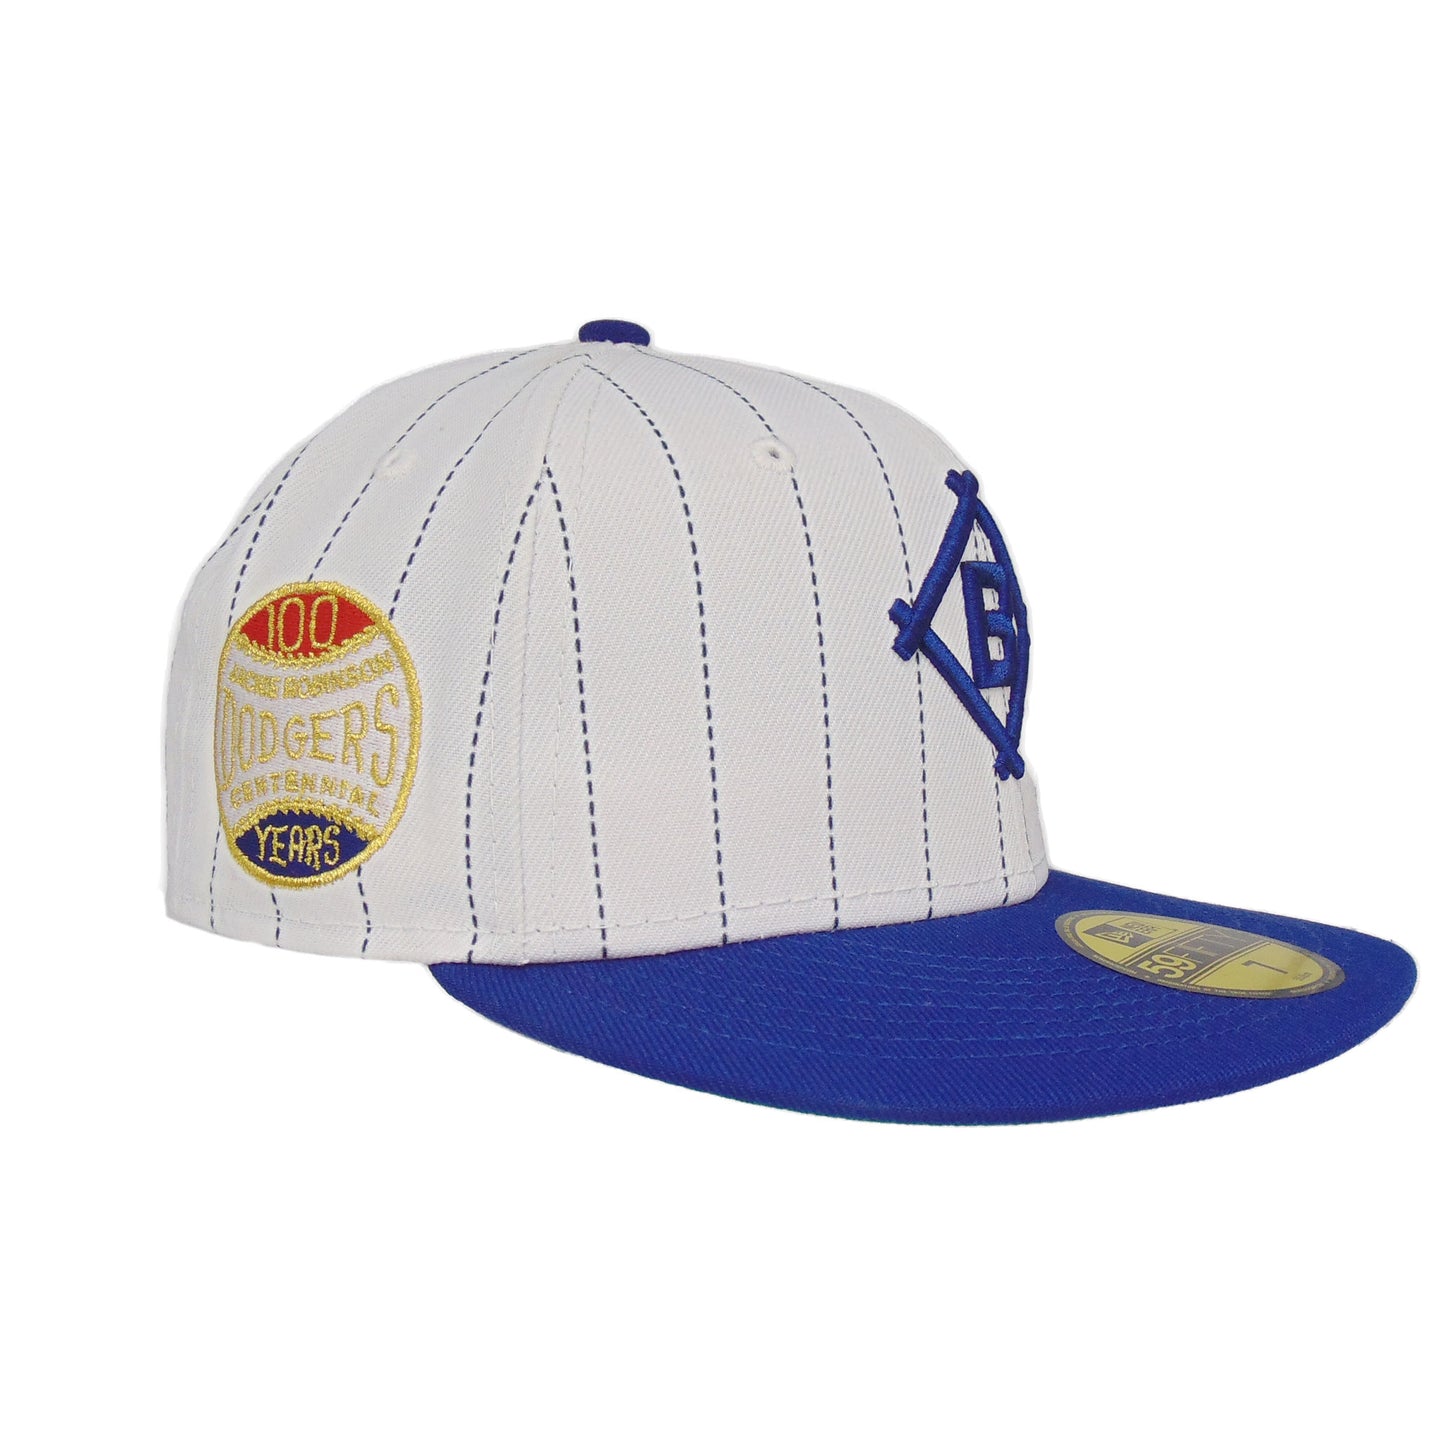 Brooklyn Dodgers Custom New Era Cap White 100 Years